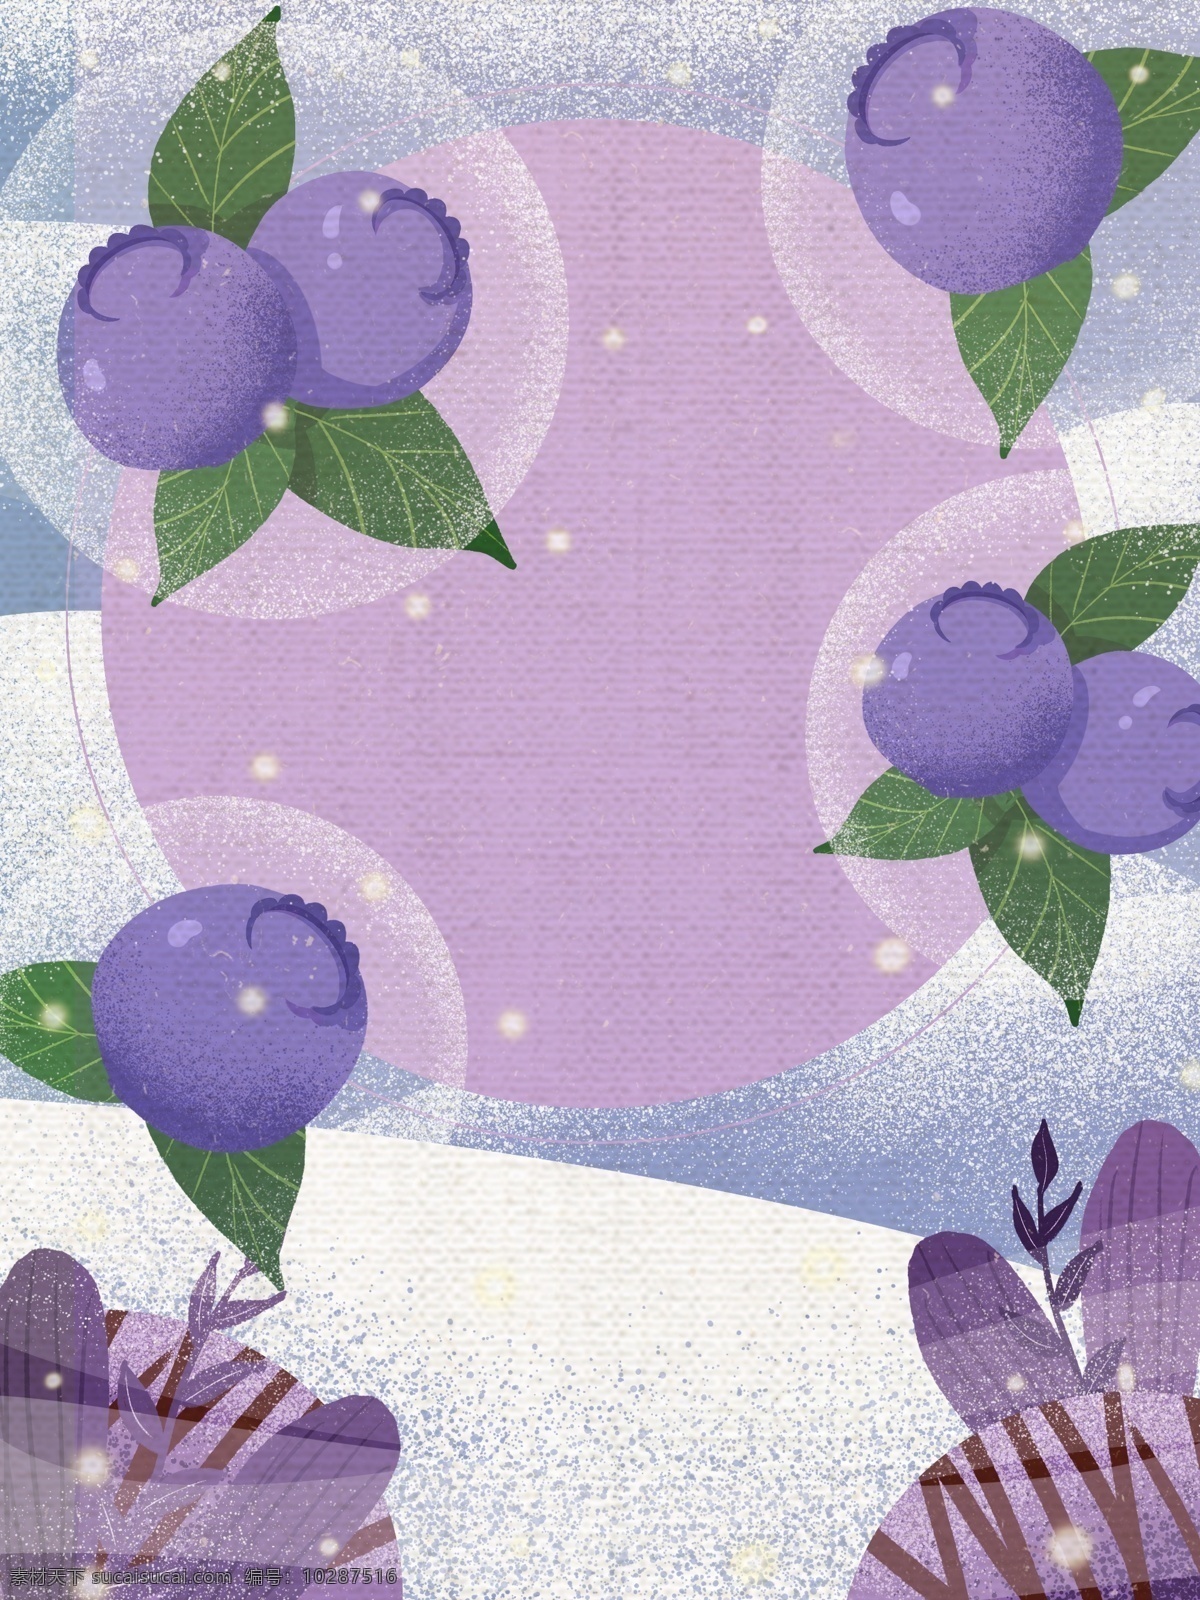 彩绘 蓝莓 背景 广告背景 促销背景 背景图 创意 水果 蓝莓背景 手绘蓝莓 彩绘背景 背景展板图